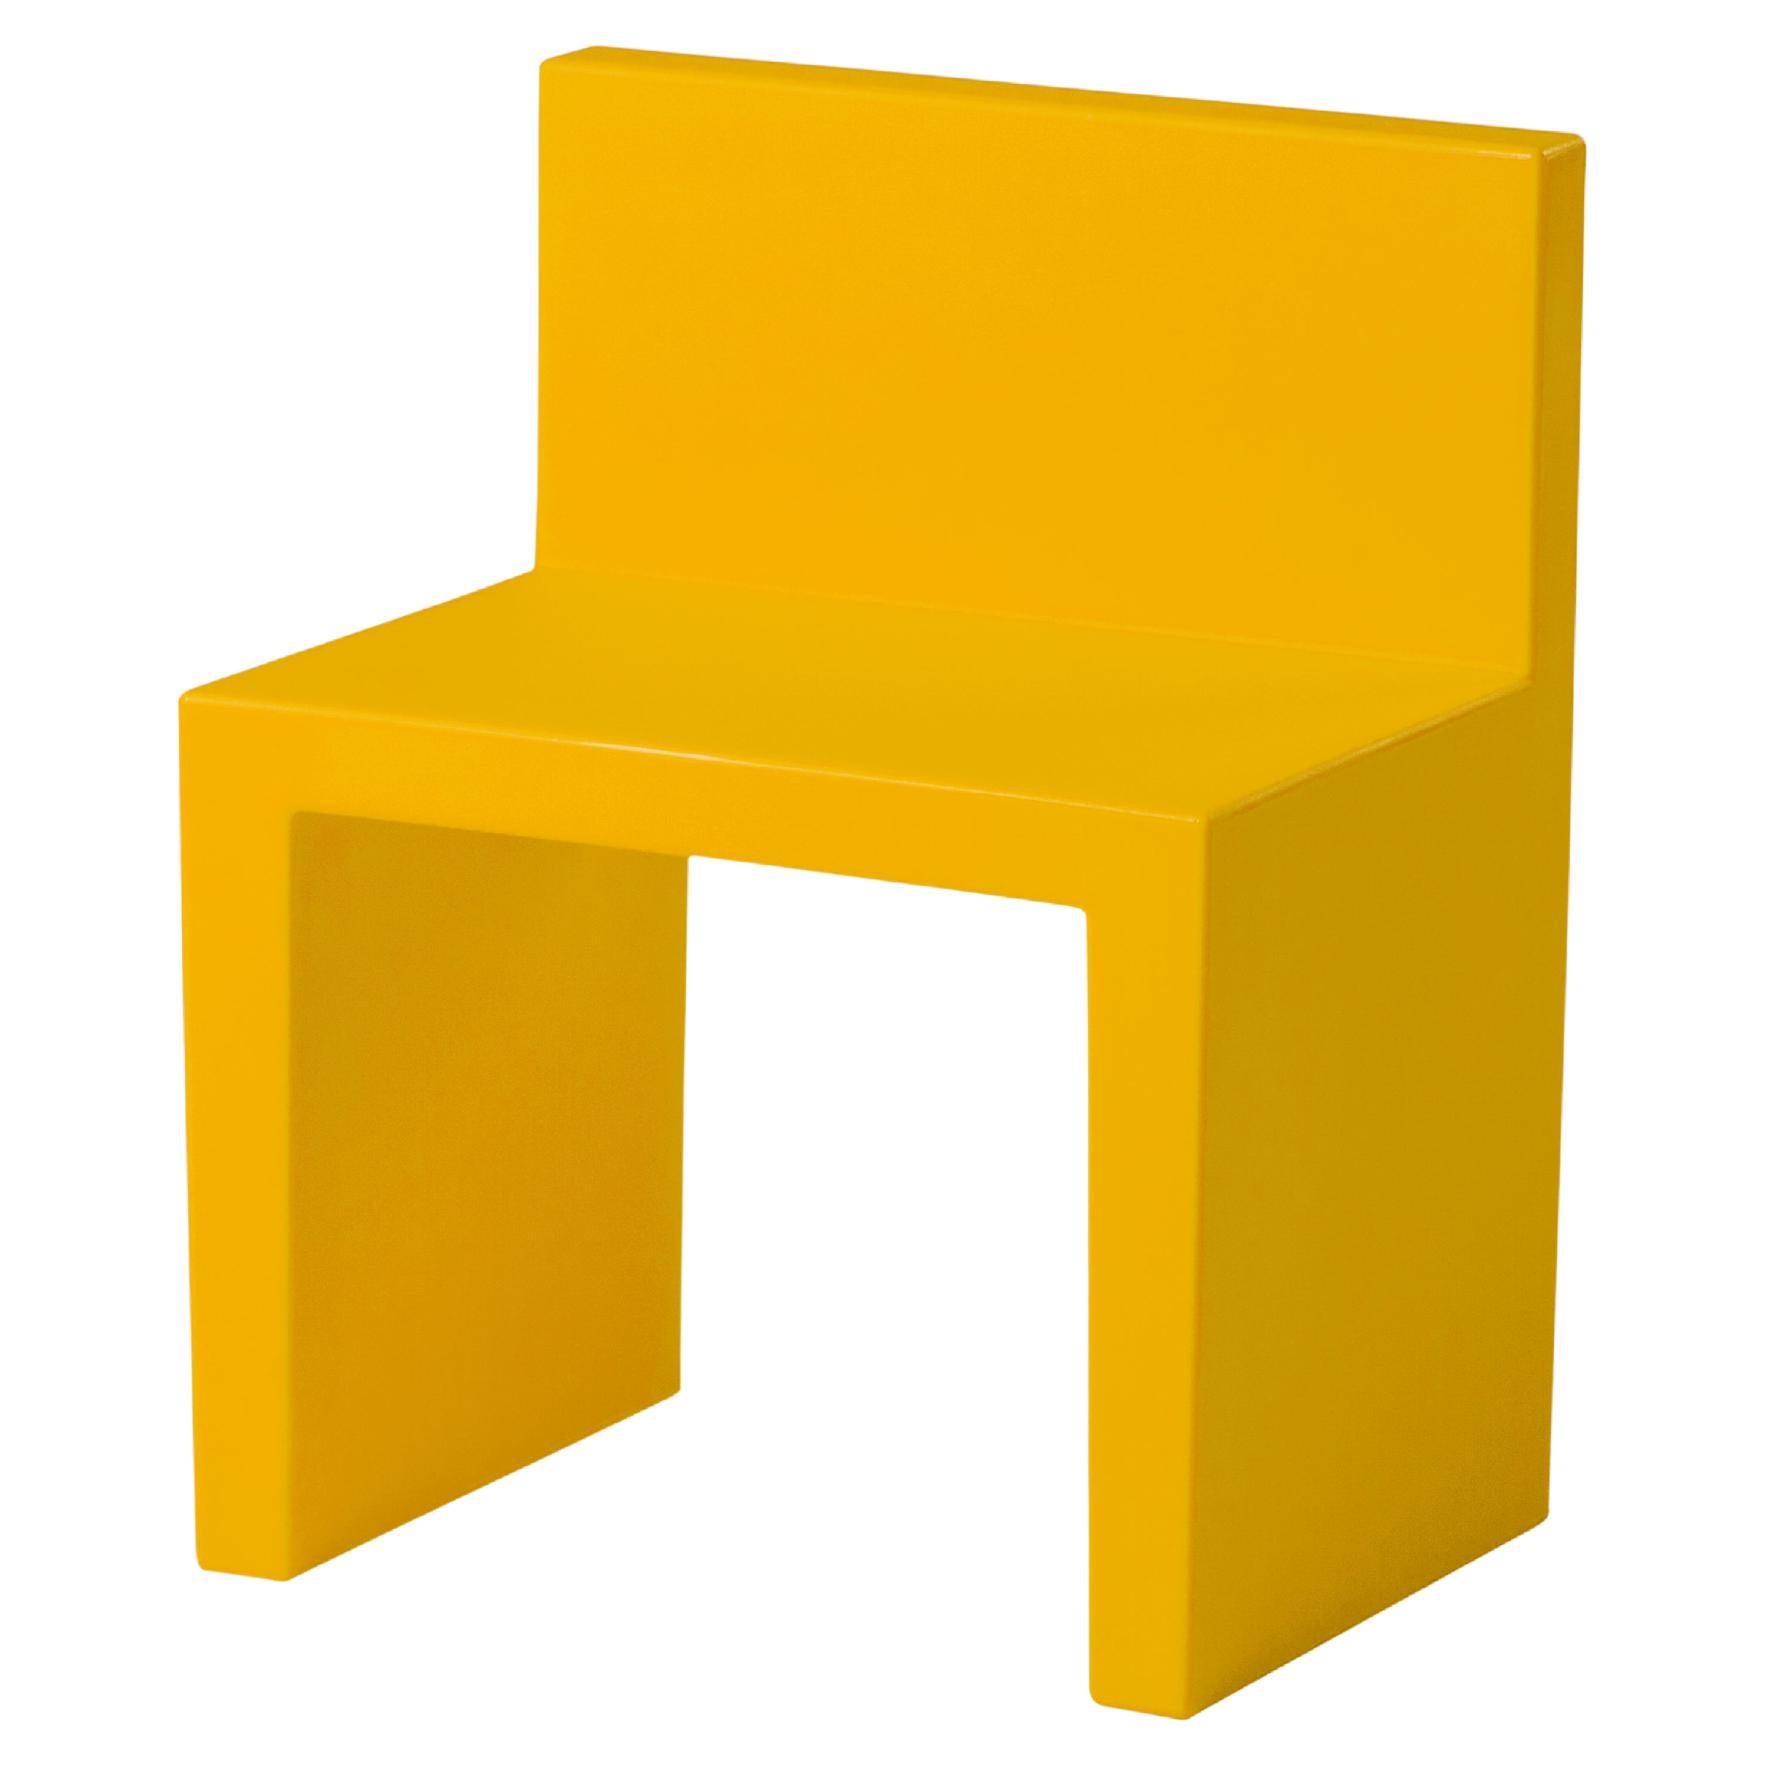 Slide Design Angolo Retto Kids Chair in Saffron Yellow by Slide Studio